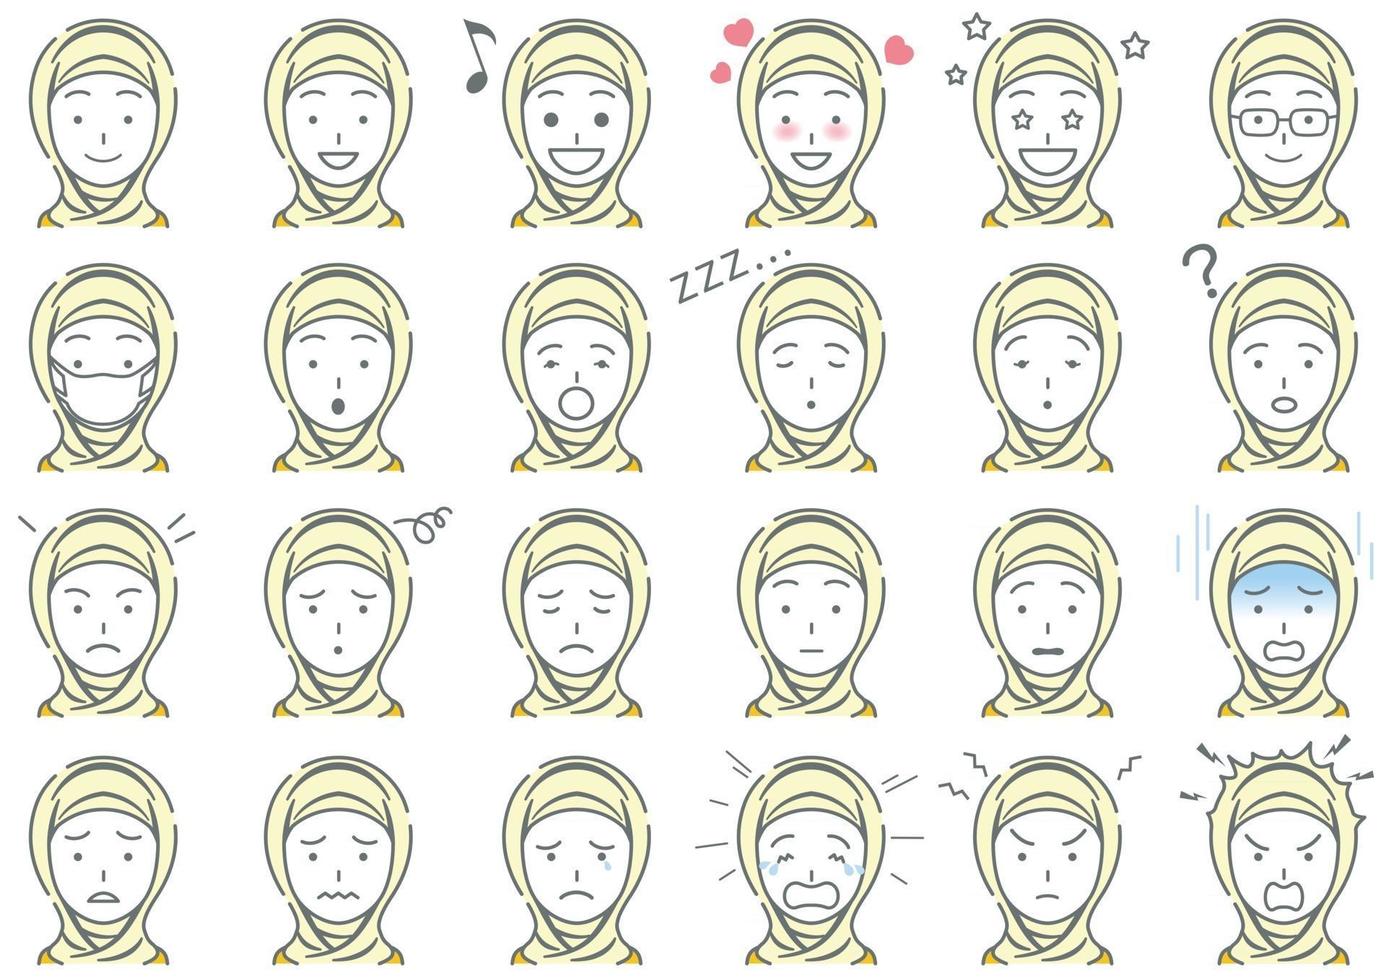 muslimsk affärskvinna vektor olika ansiktsuttryck set isolerad på en vit bakgrund